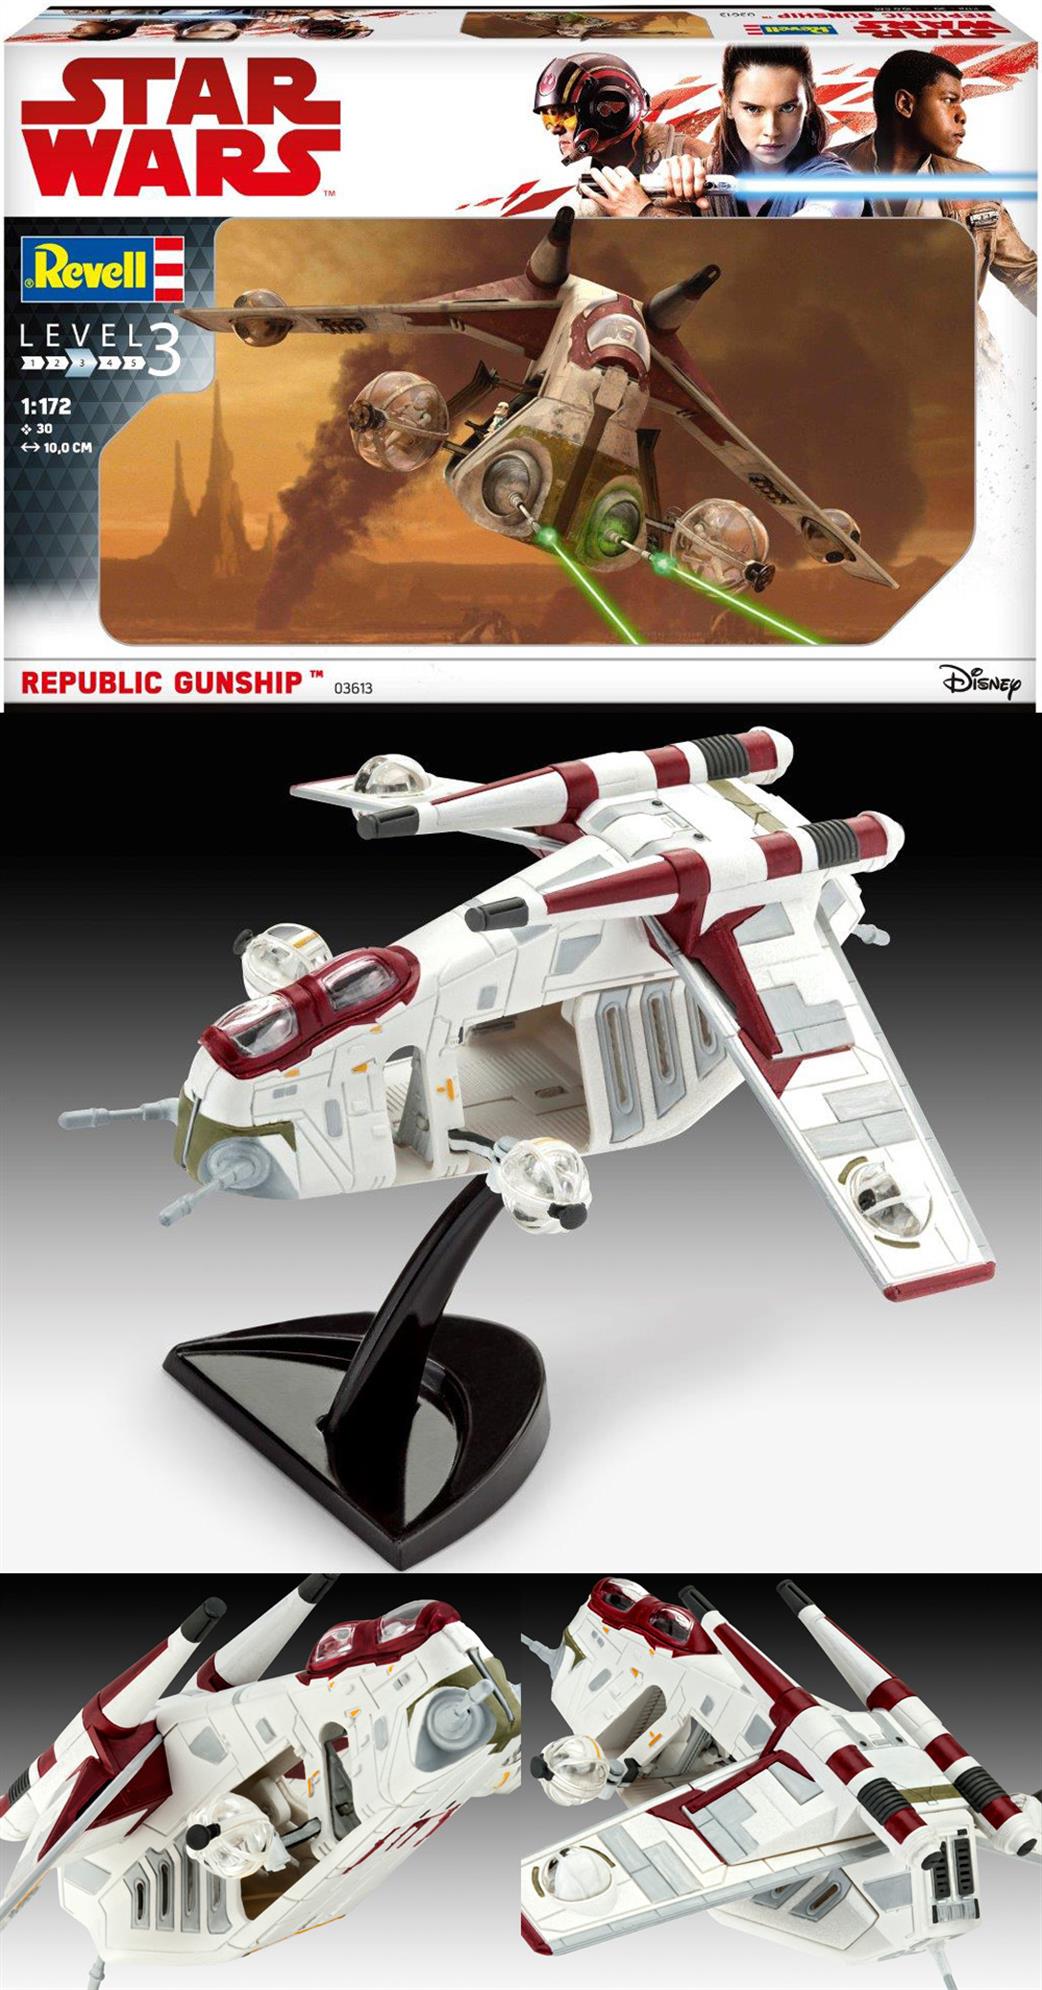 Revell 1/172 03613 00655 Republic Gunship Star Wars Easy Kit Pocket